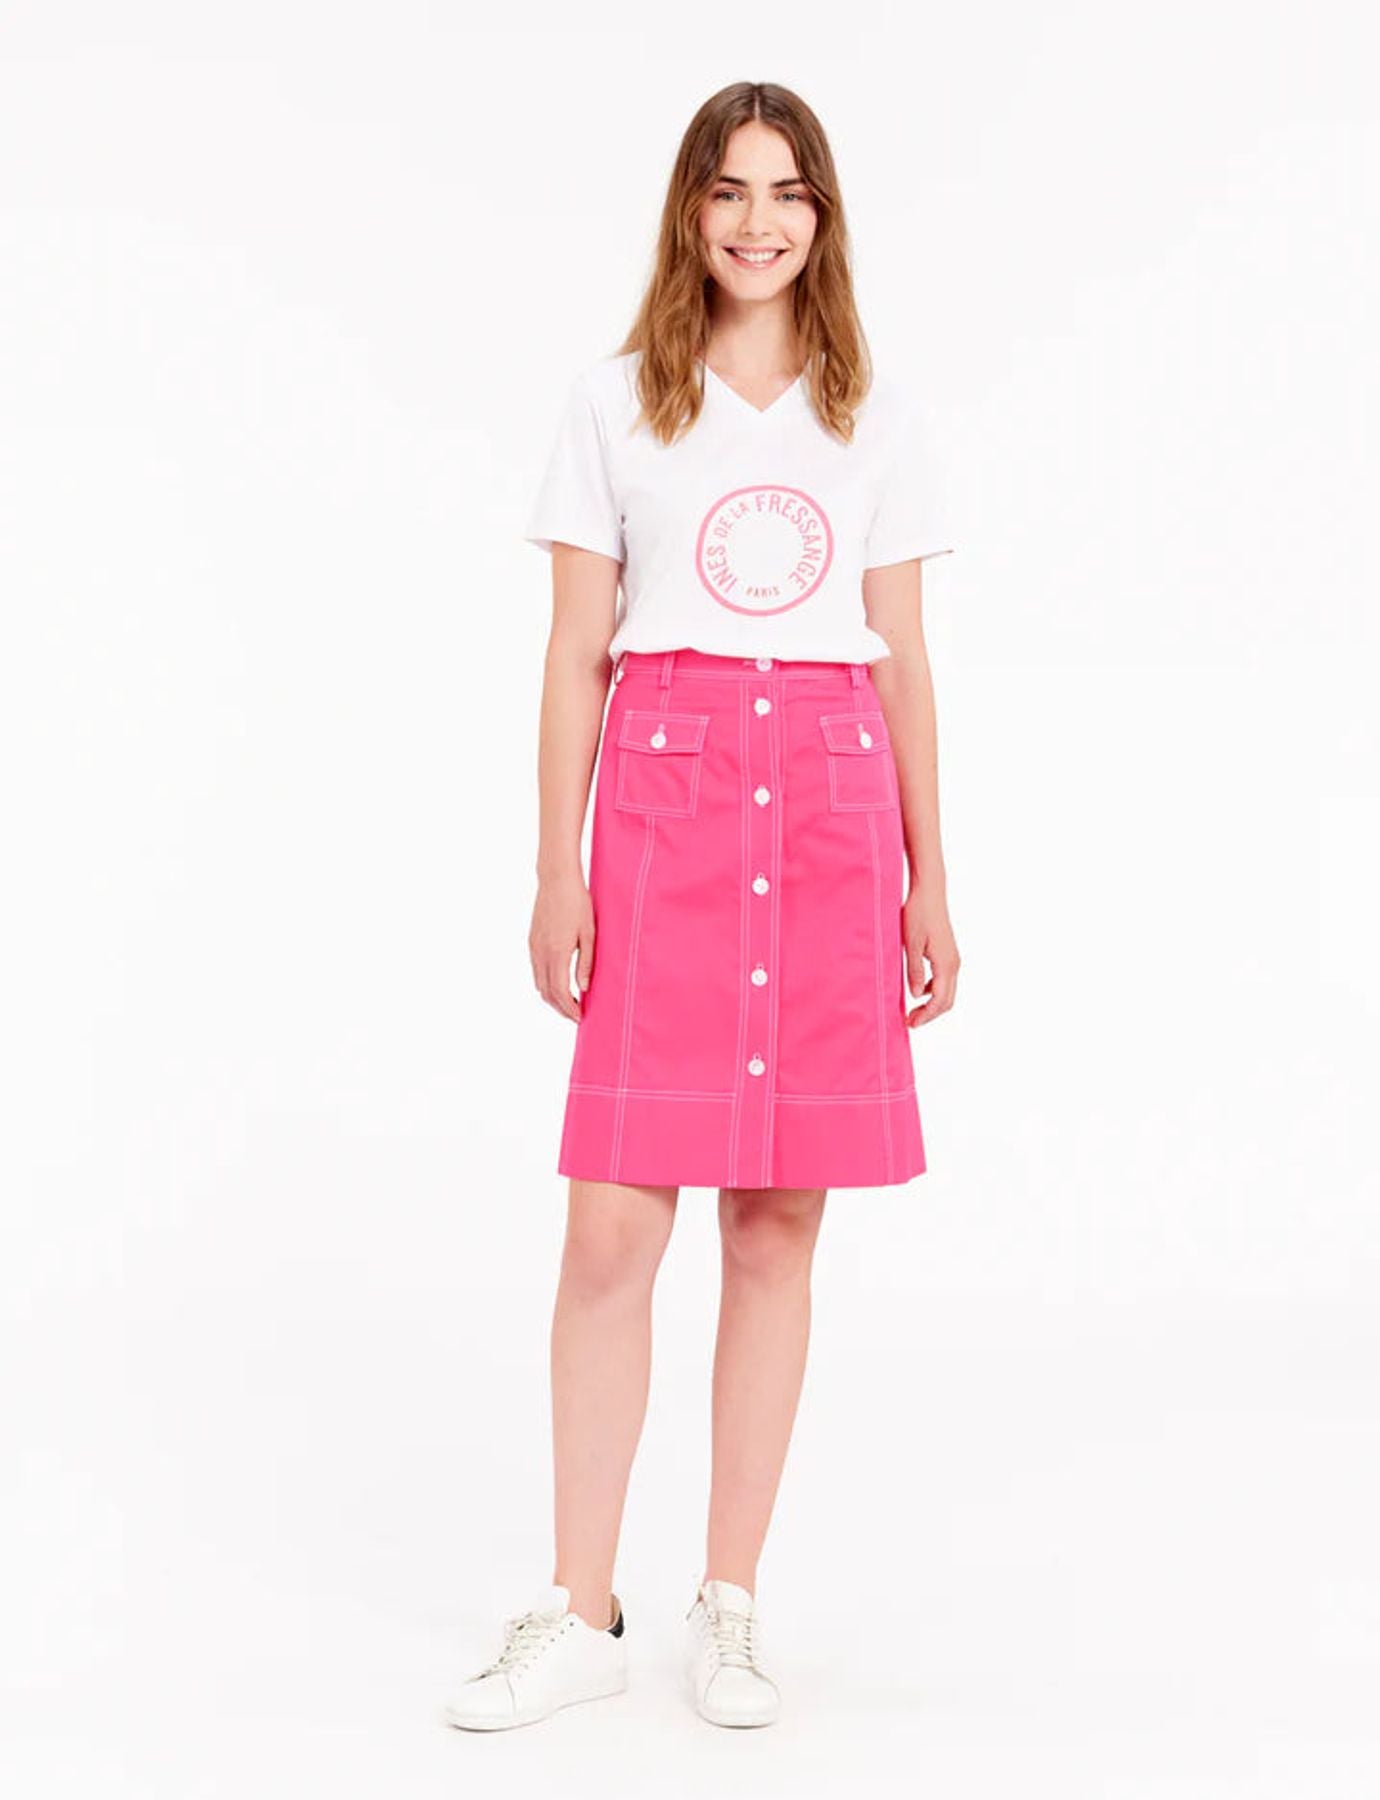 skirt-rachel-pink